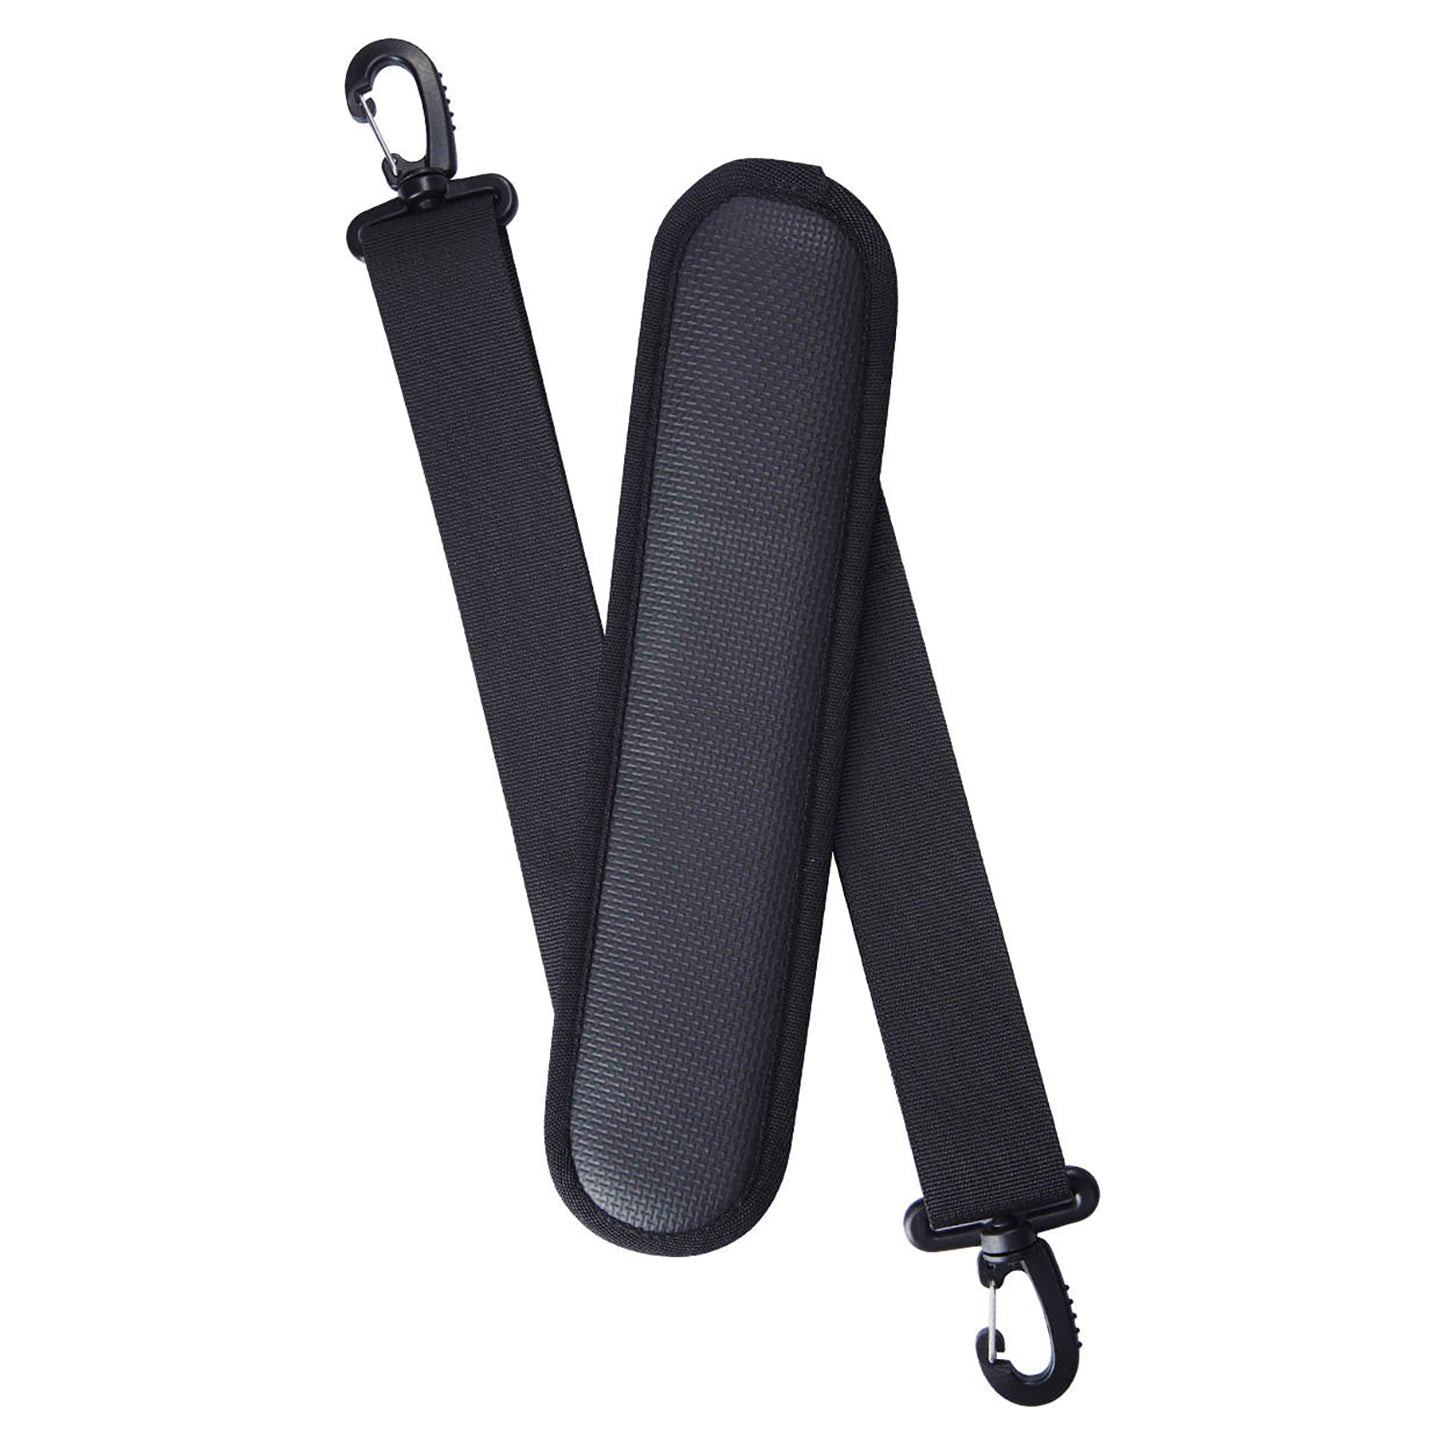 "Sangle de transport noire ajustable boucles et clips qualité premium tout confort pour planches de SUP Yogaterrae"